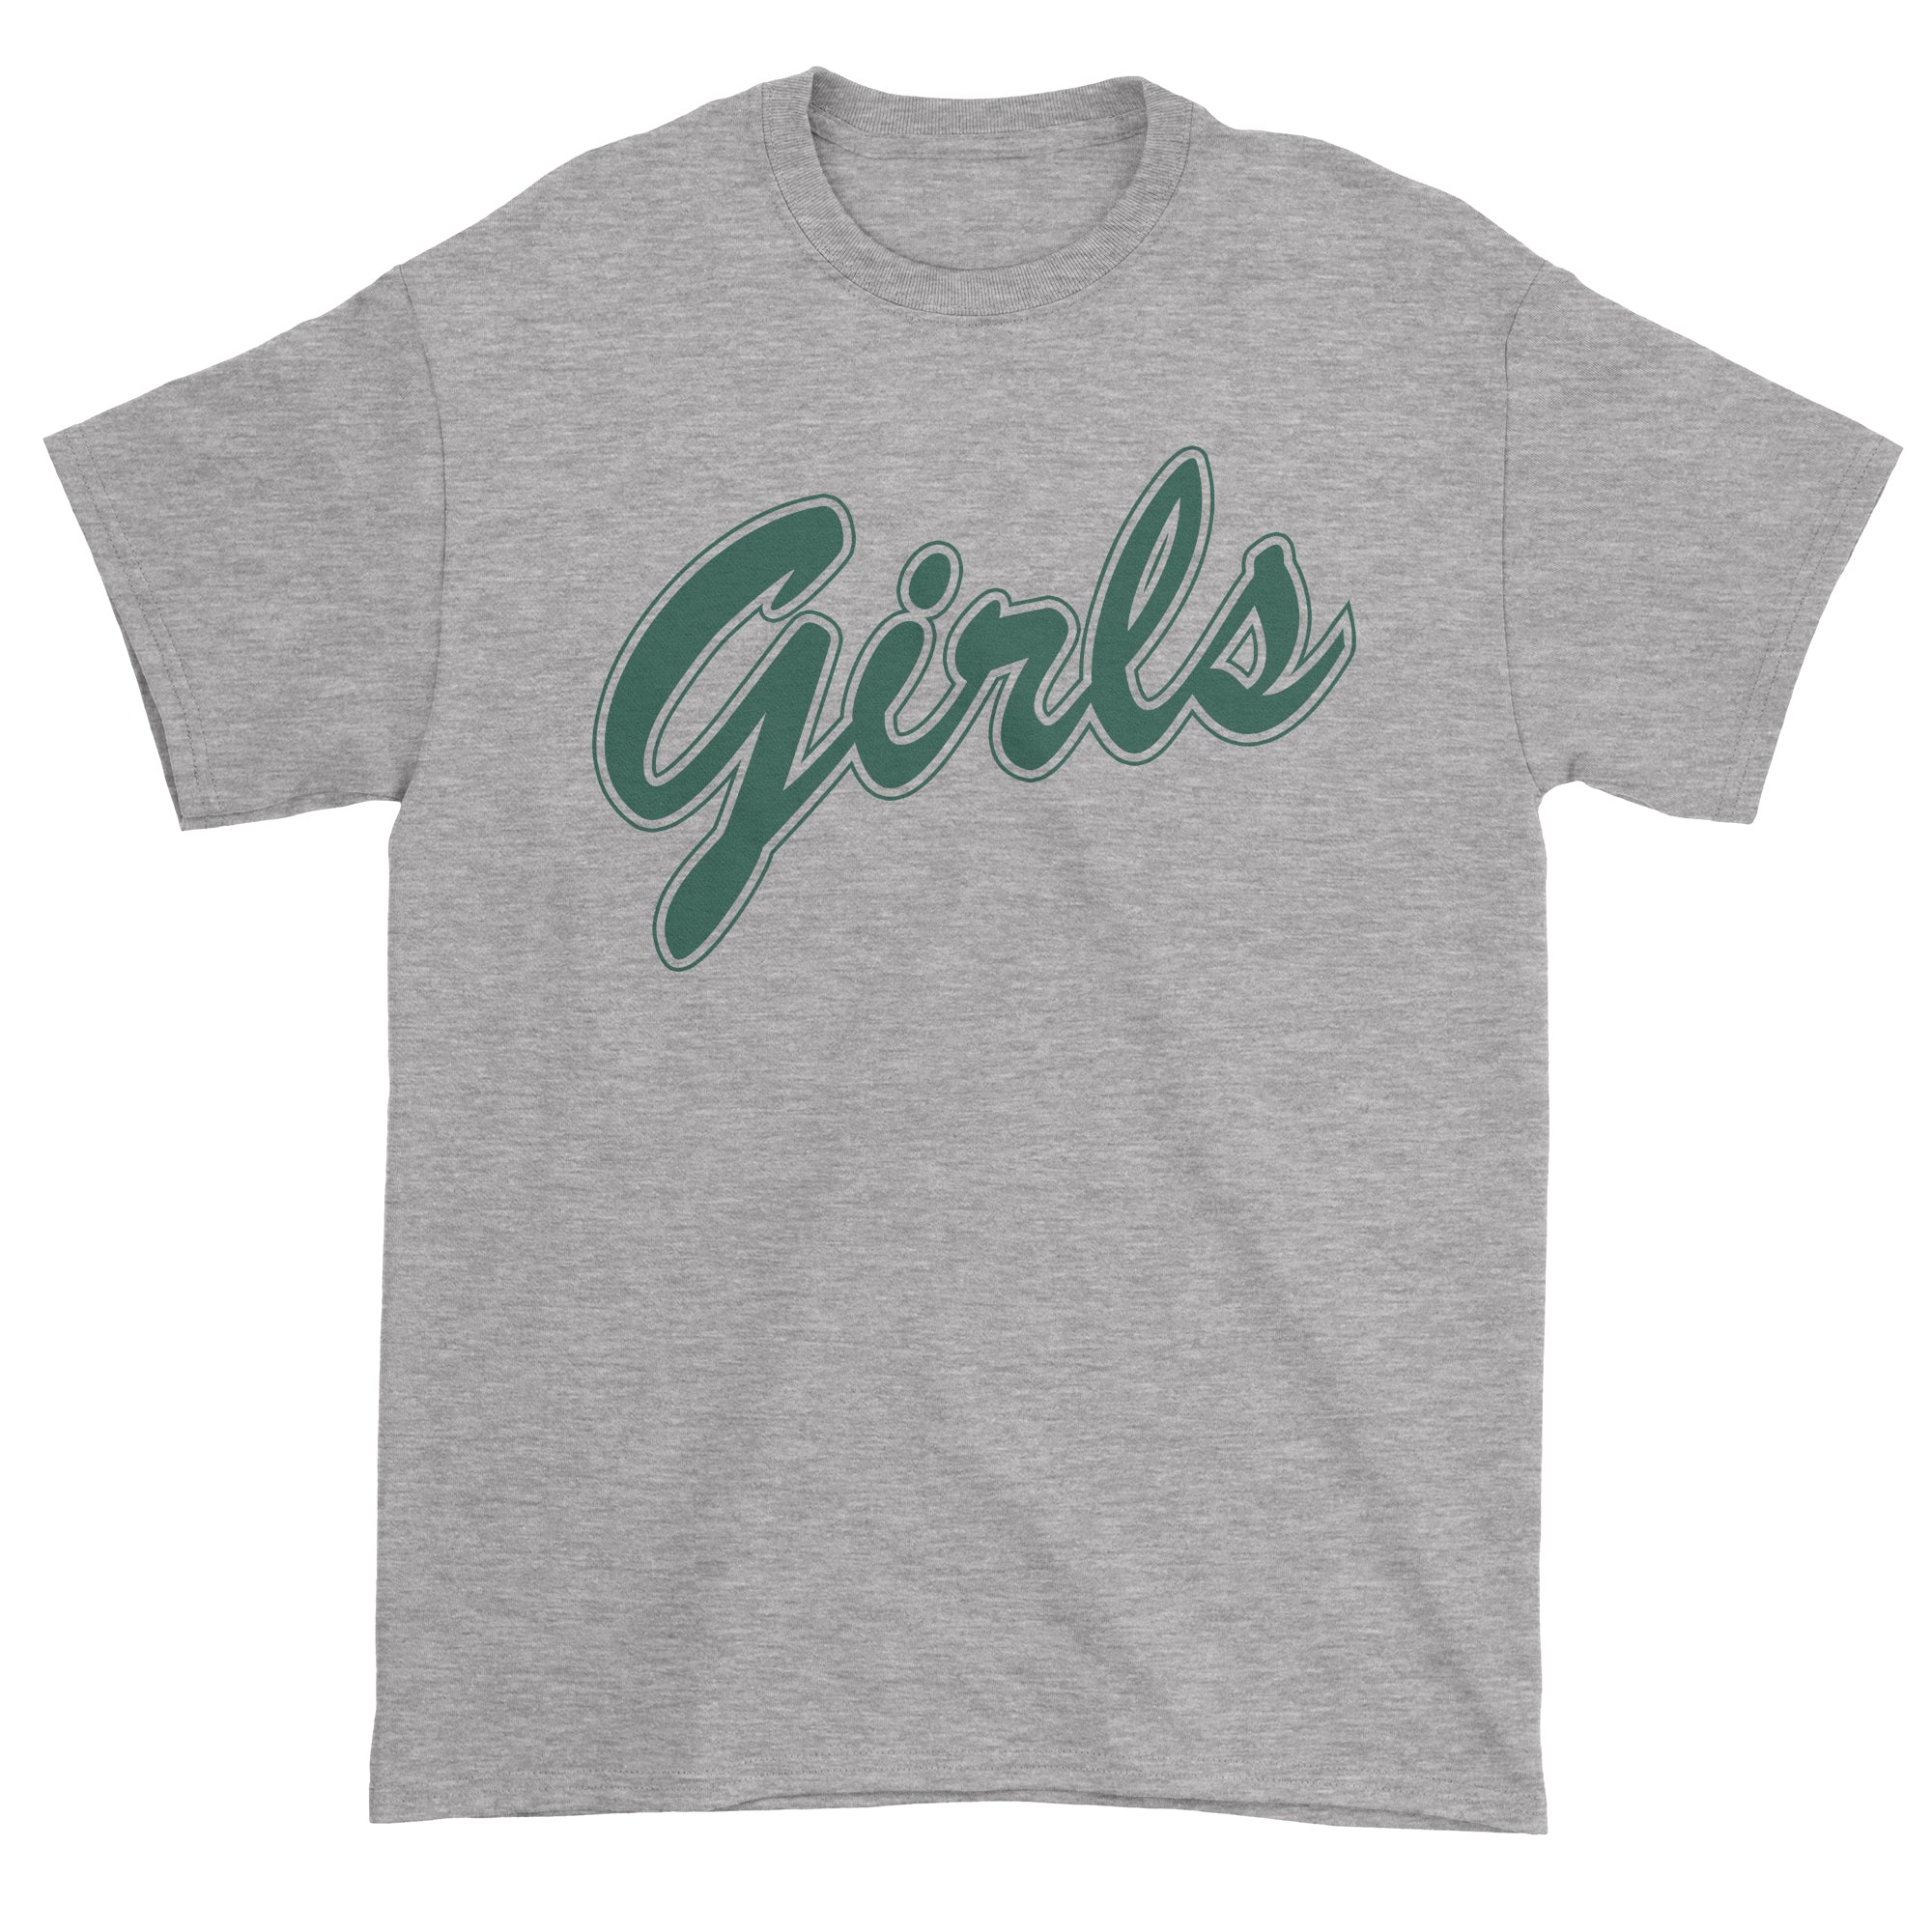 Girls Shirt From Friends (Green) Men's T-Shirt